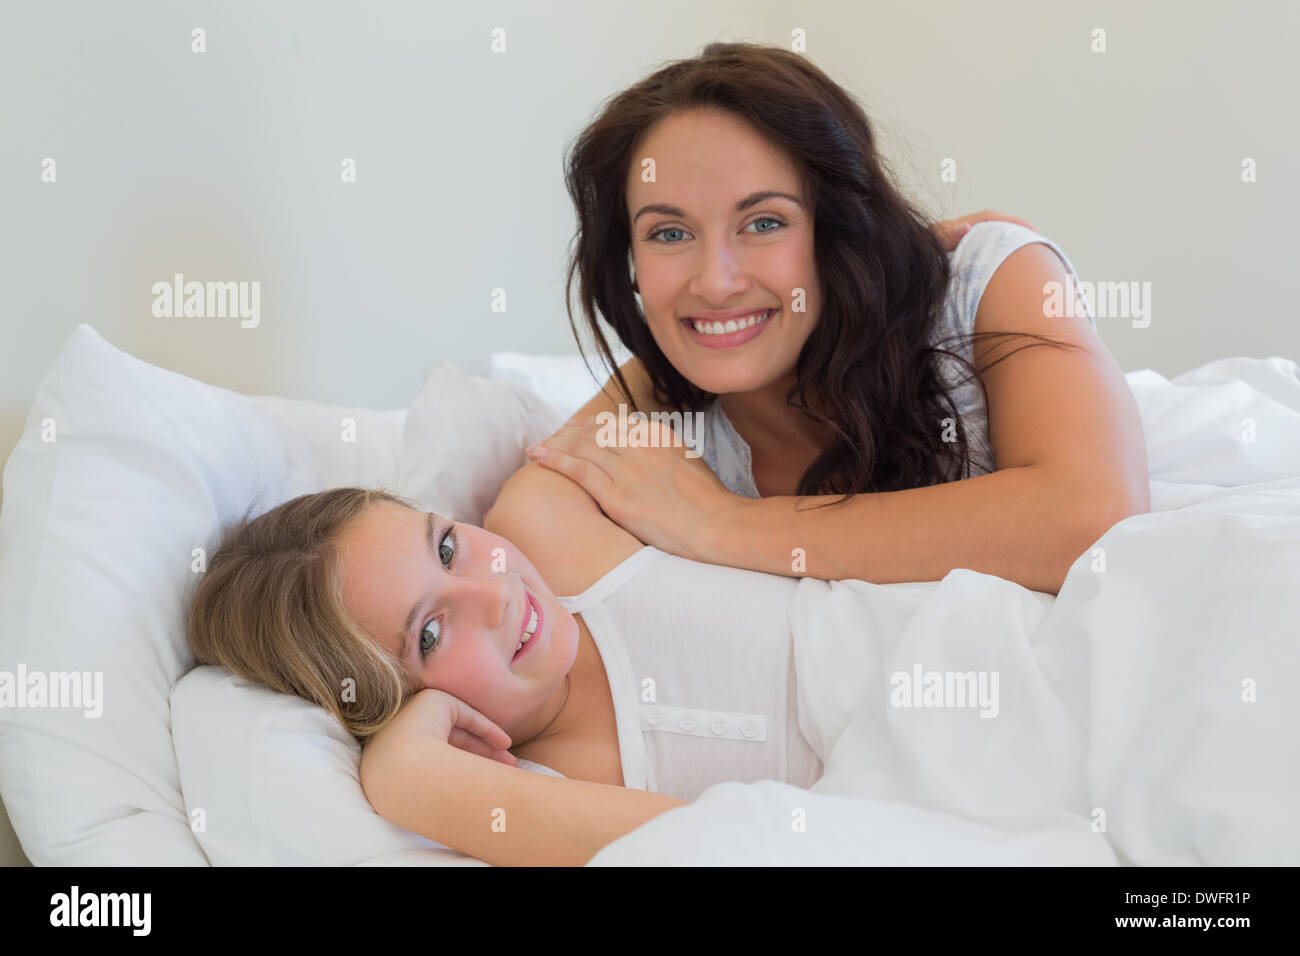 Мама с дочкой в постели. Мама с взрослой дочерью на кровати. Мама и дочка подросток в постели. Маму или дочь в постель?. Мама с дочкой тянутся в постели.